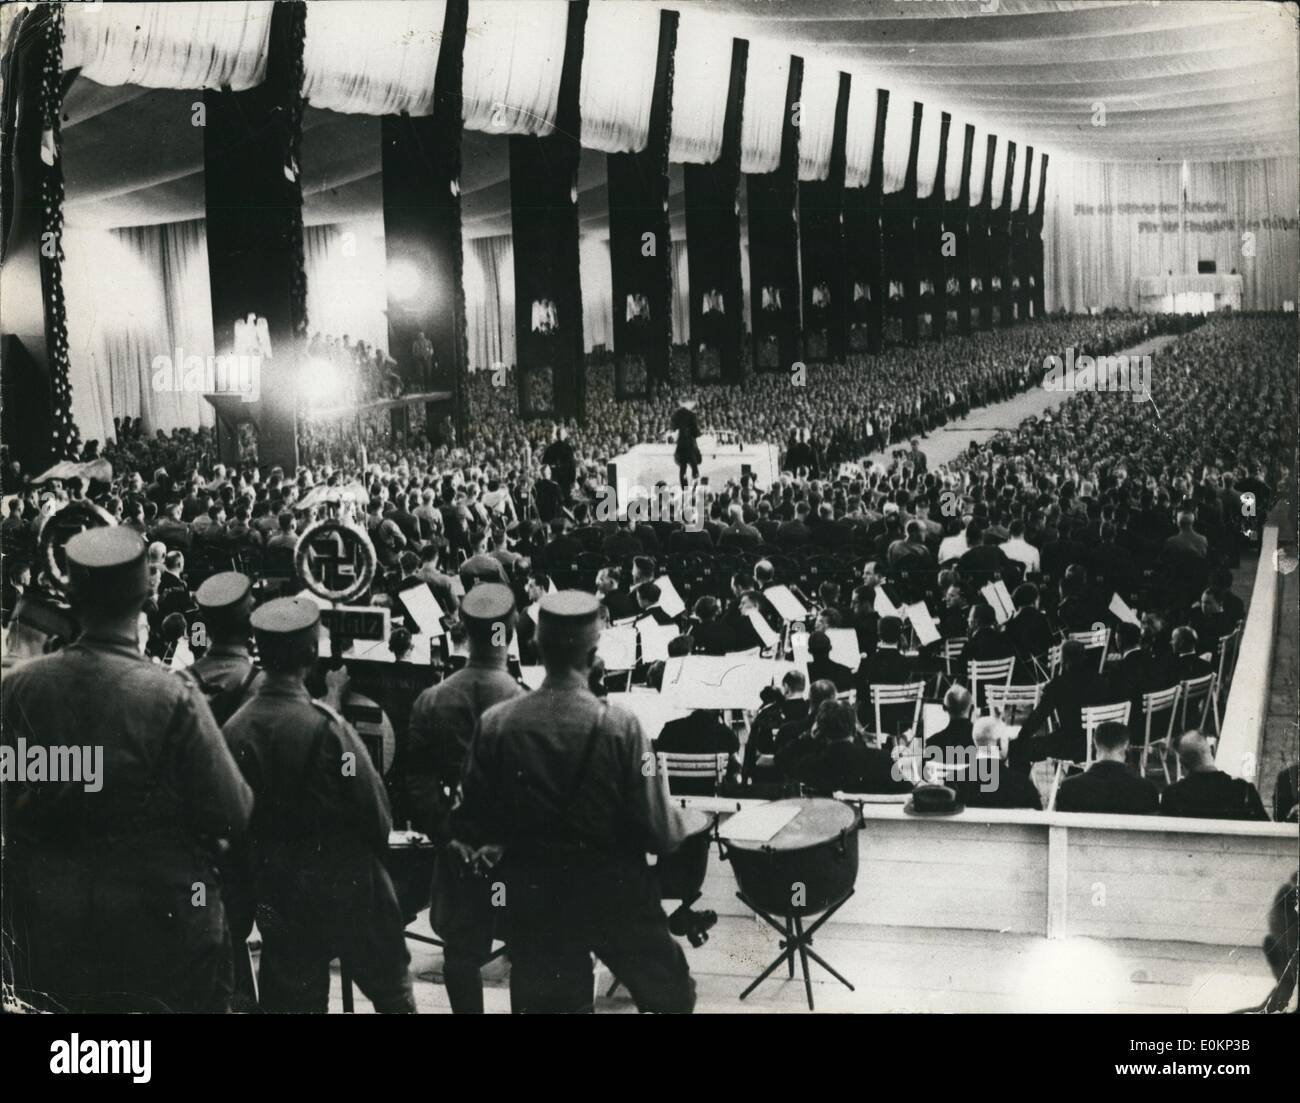 Septembre 09, 1933 - couleurs nazi à Nuremberg : une vue générale pendant la réunion à la salle d'exposition. Nuremberg montrant un ''illisible'' Hitler (à gauche) pendant le Congrès socialiste. Banque D'Images